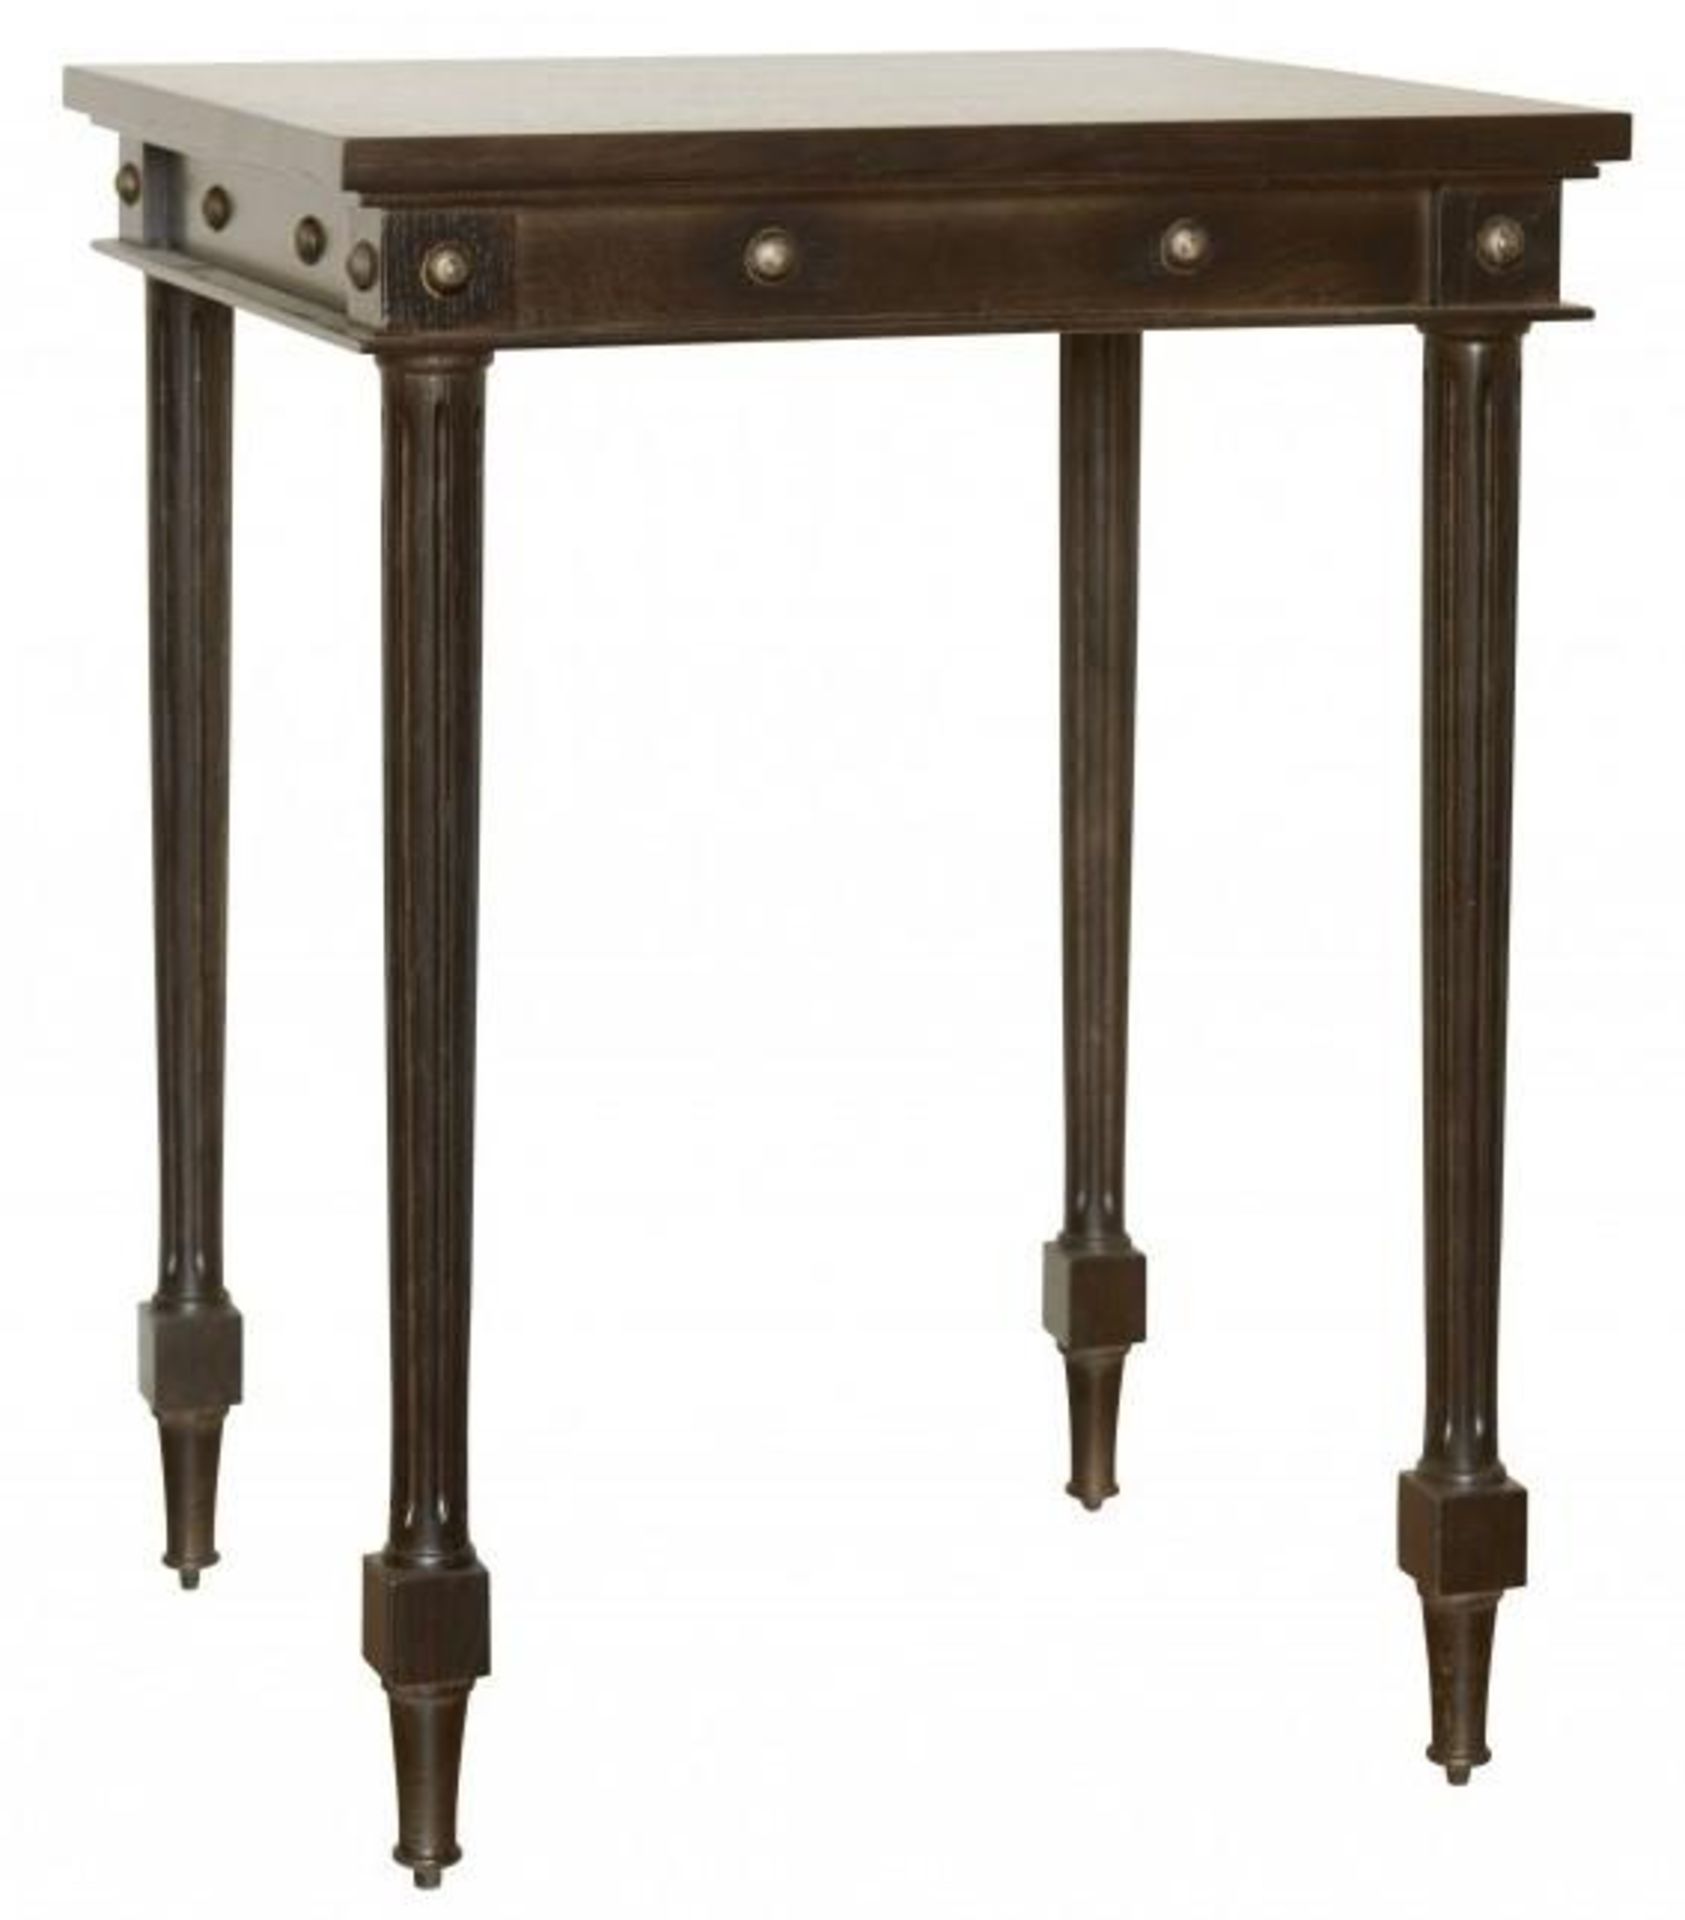 1 x JUSTIN VAN BREDA 'Thomas' Tall Side Table With A Dark Oak Finish - Dimensions: W50 x D50 x